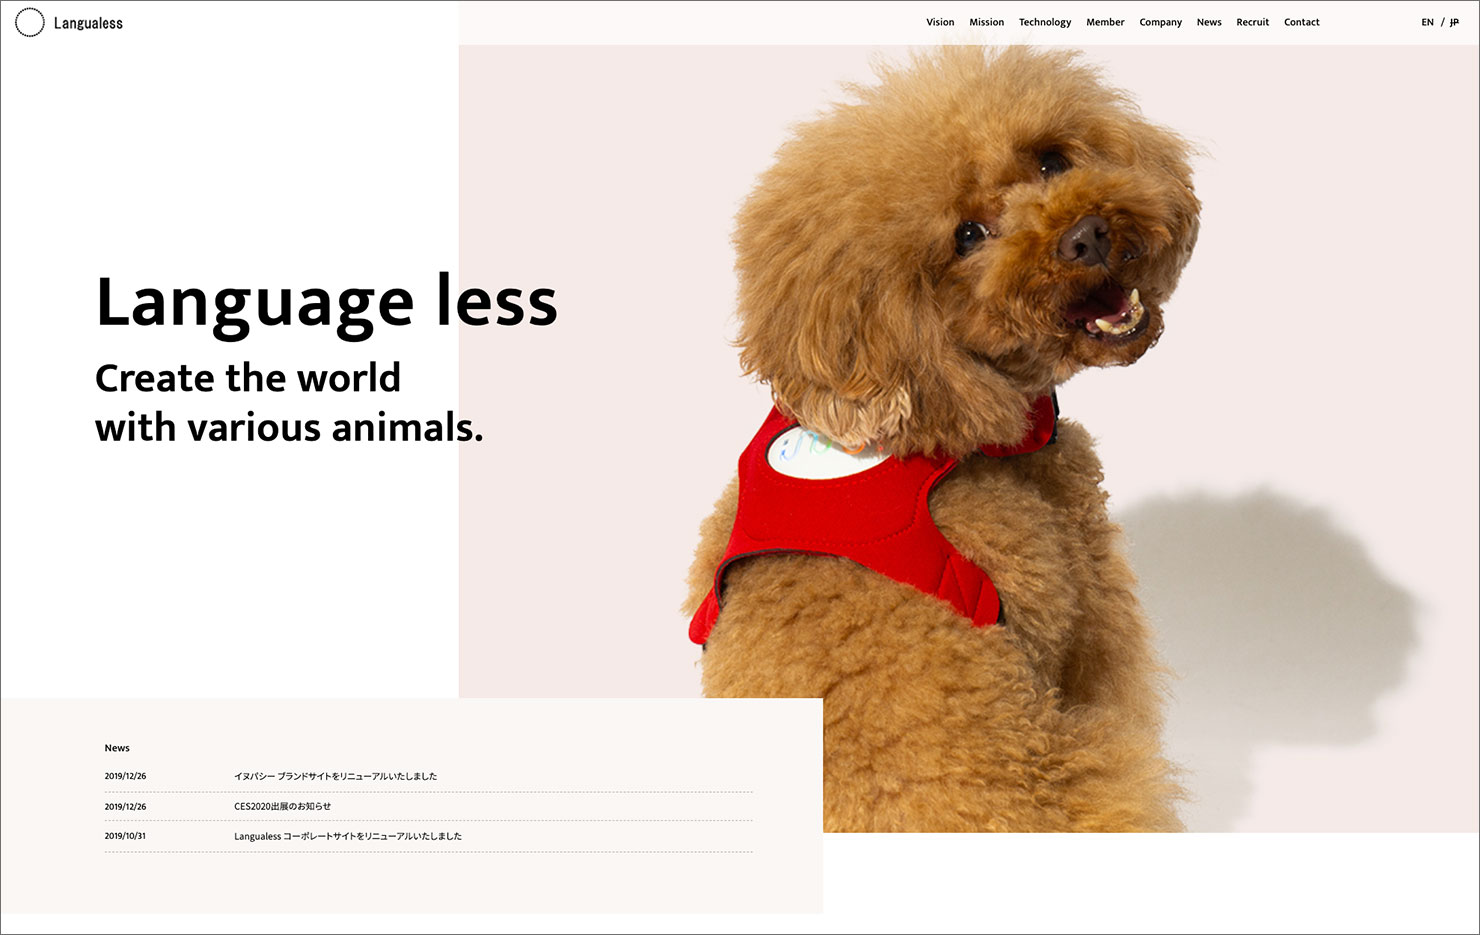 ウェブサイトのキャプチャ。トイプードルの写真と共に企業ビジョンを表すコピーの英語訳「Language less Create the world with various animals.」が書かれている